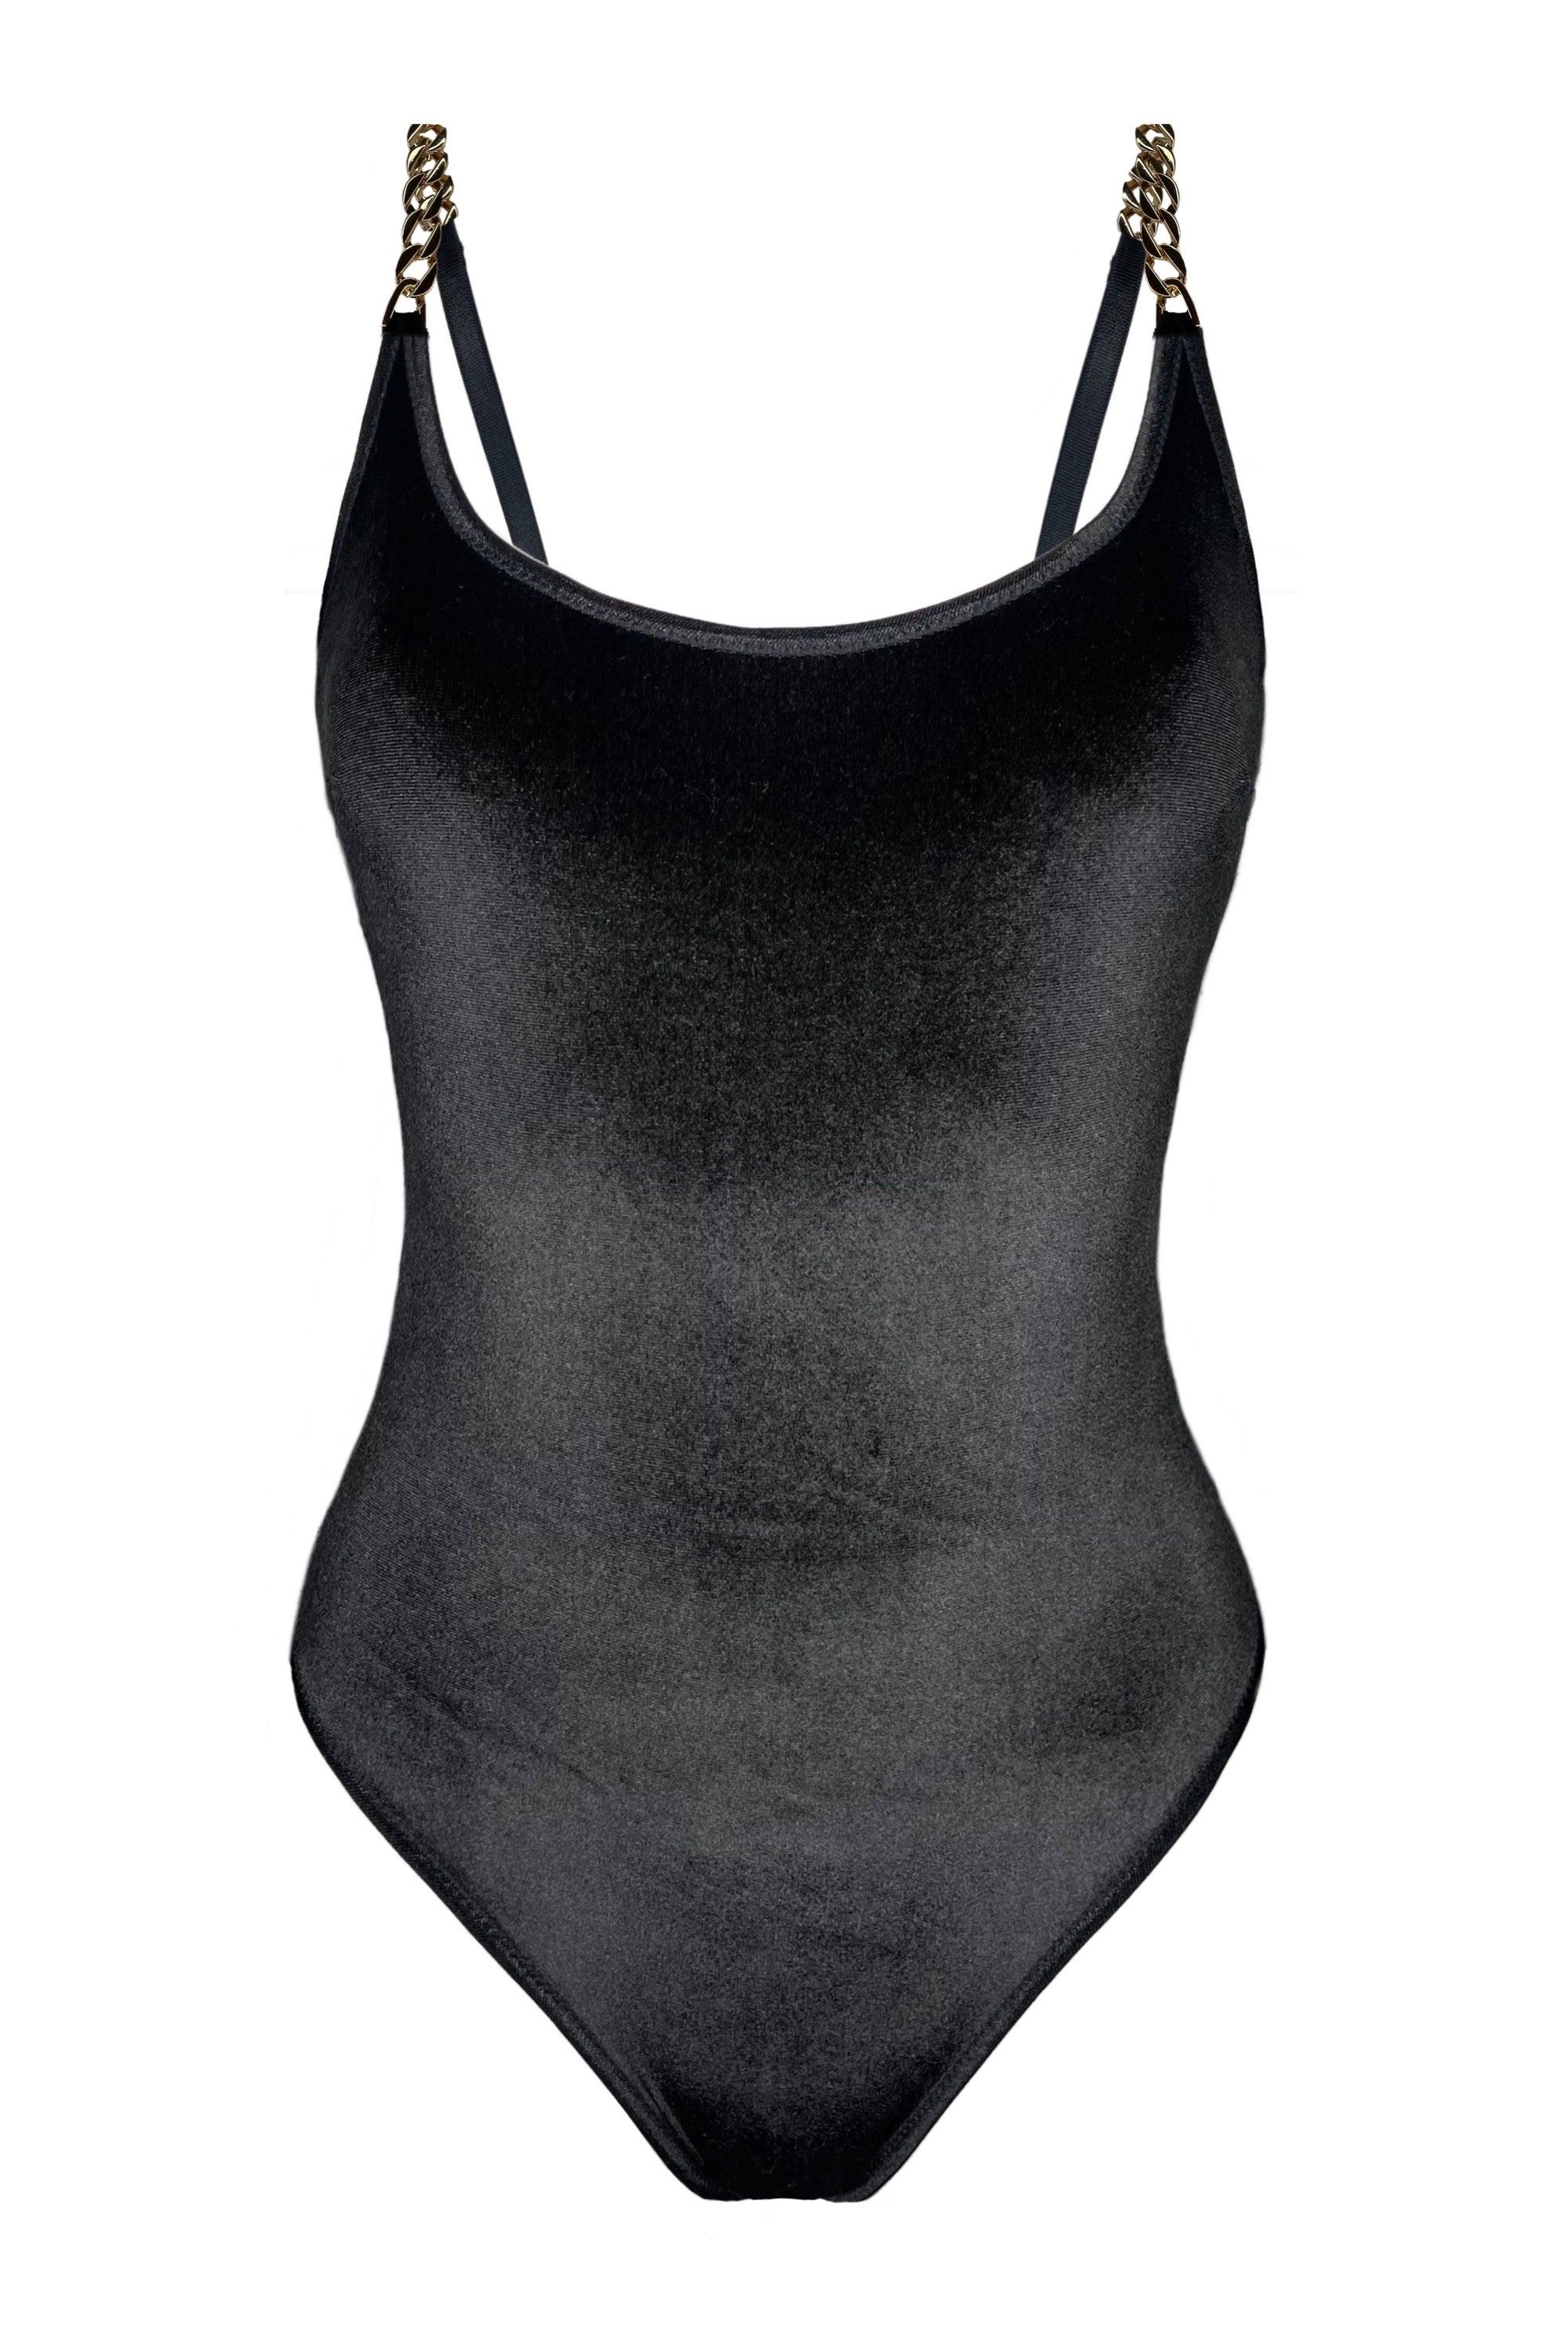 Velvetta black bodysuit with chains - yesUndress